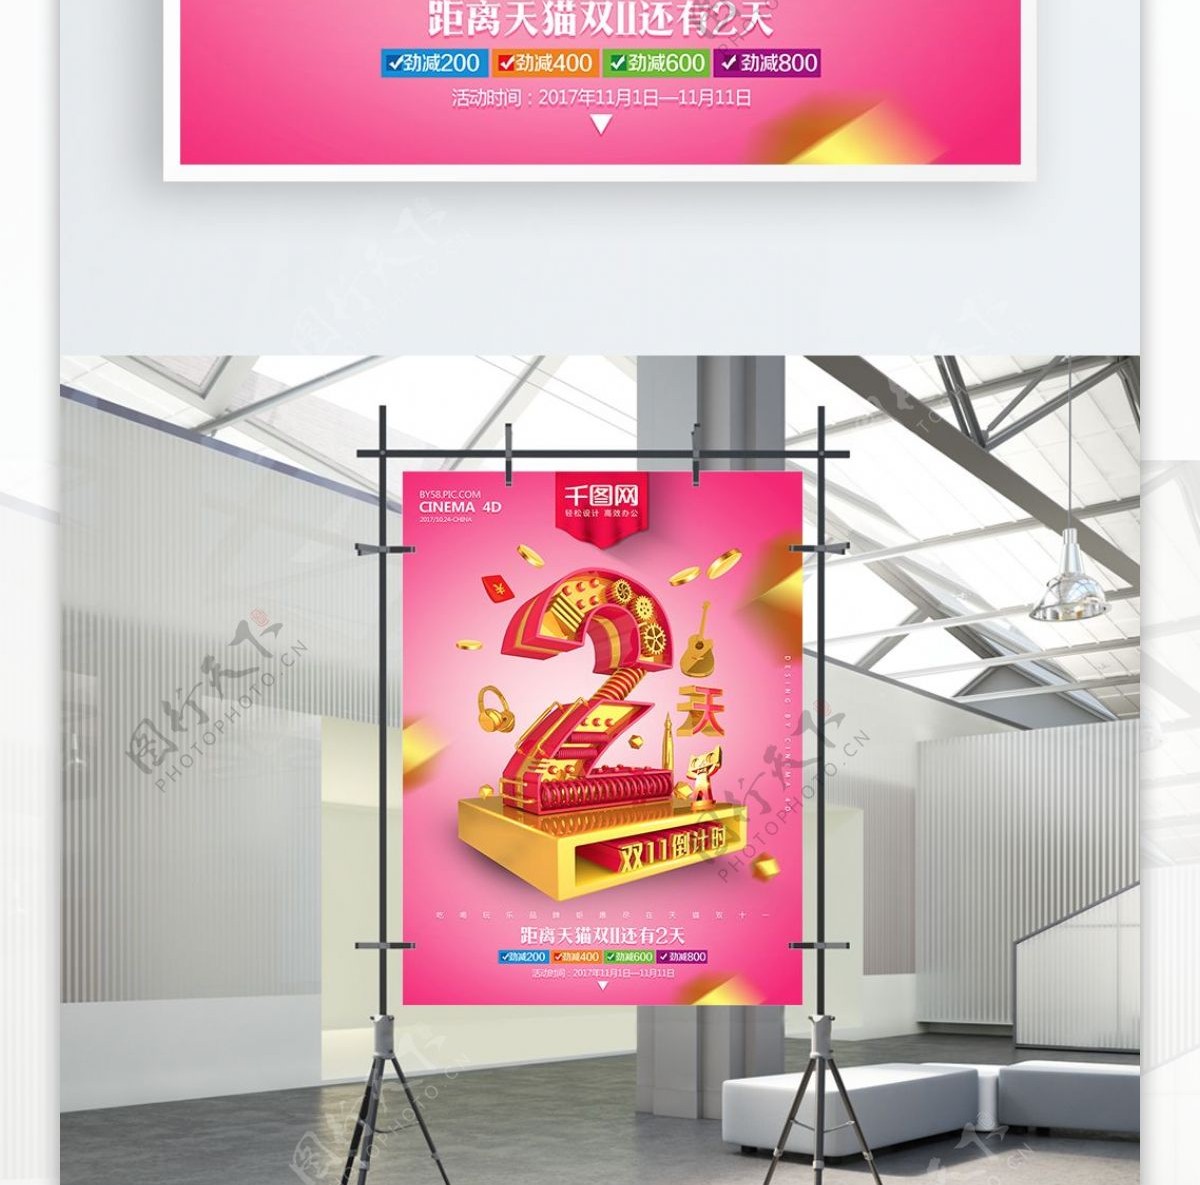 C4D渲染黄金质感机械字倒计时商业海报